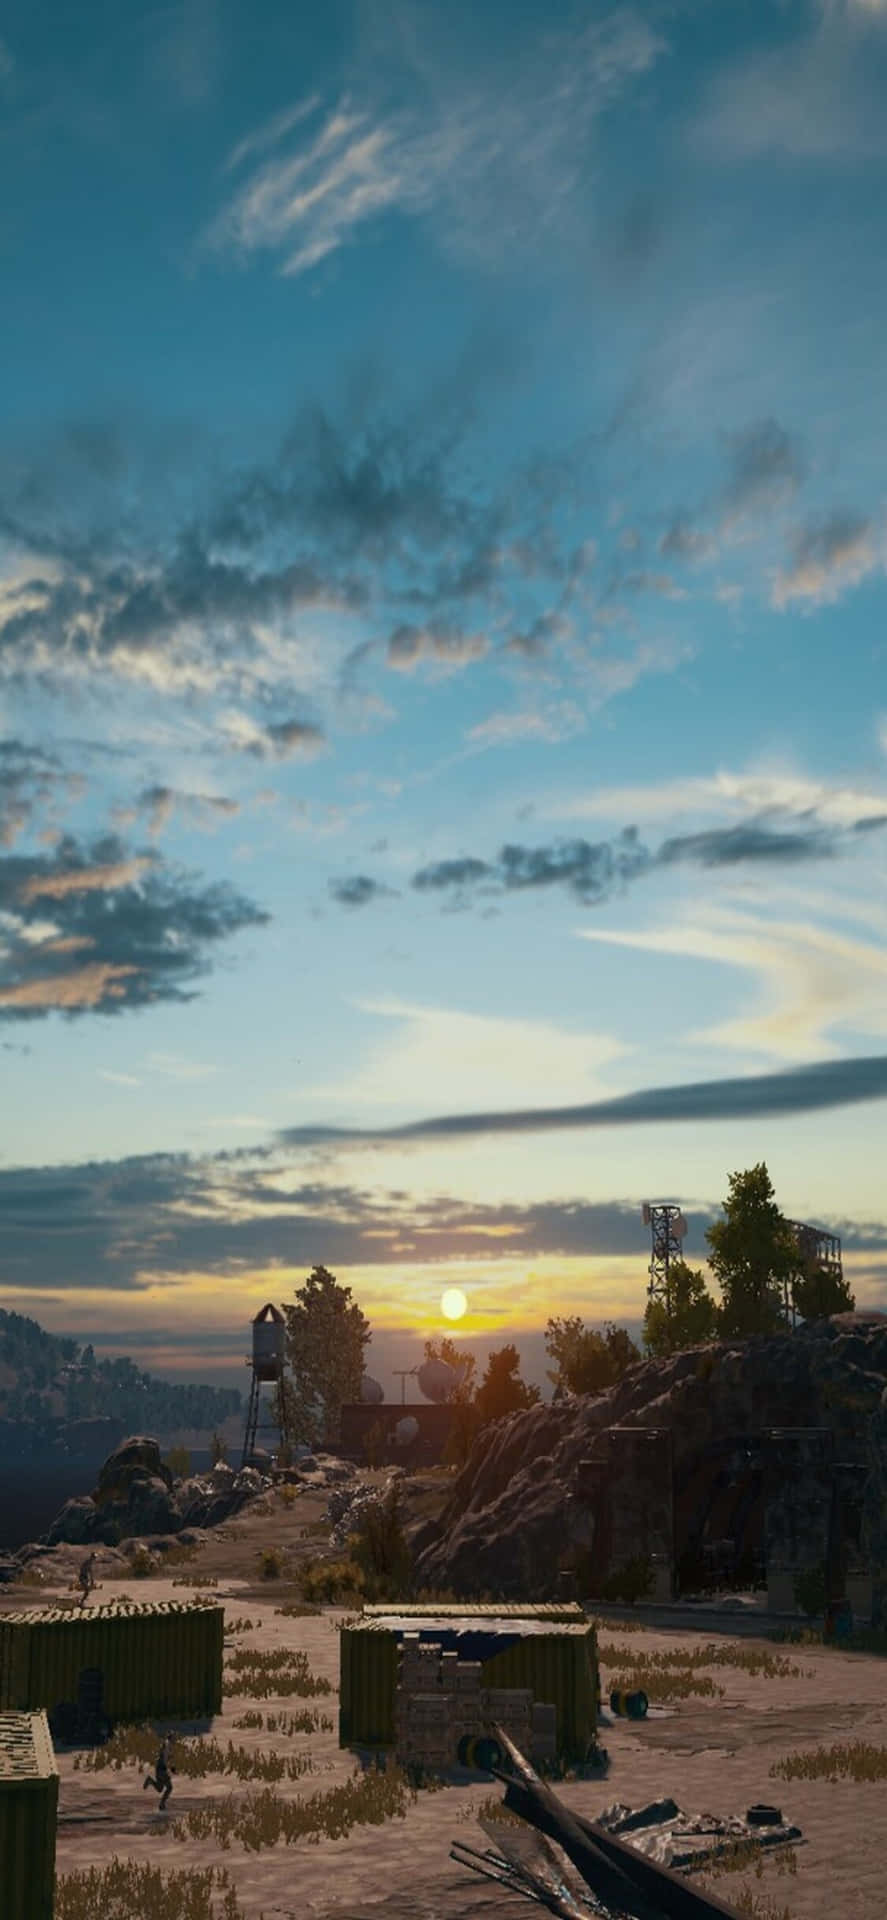 a screenshot of a desert scene with a sunset